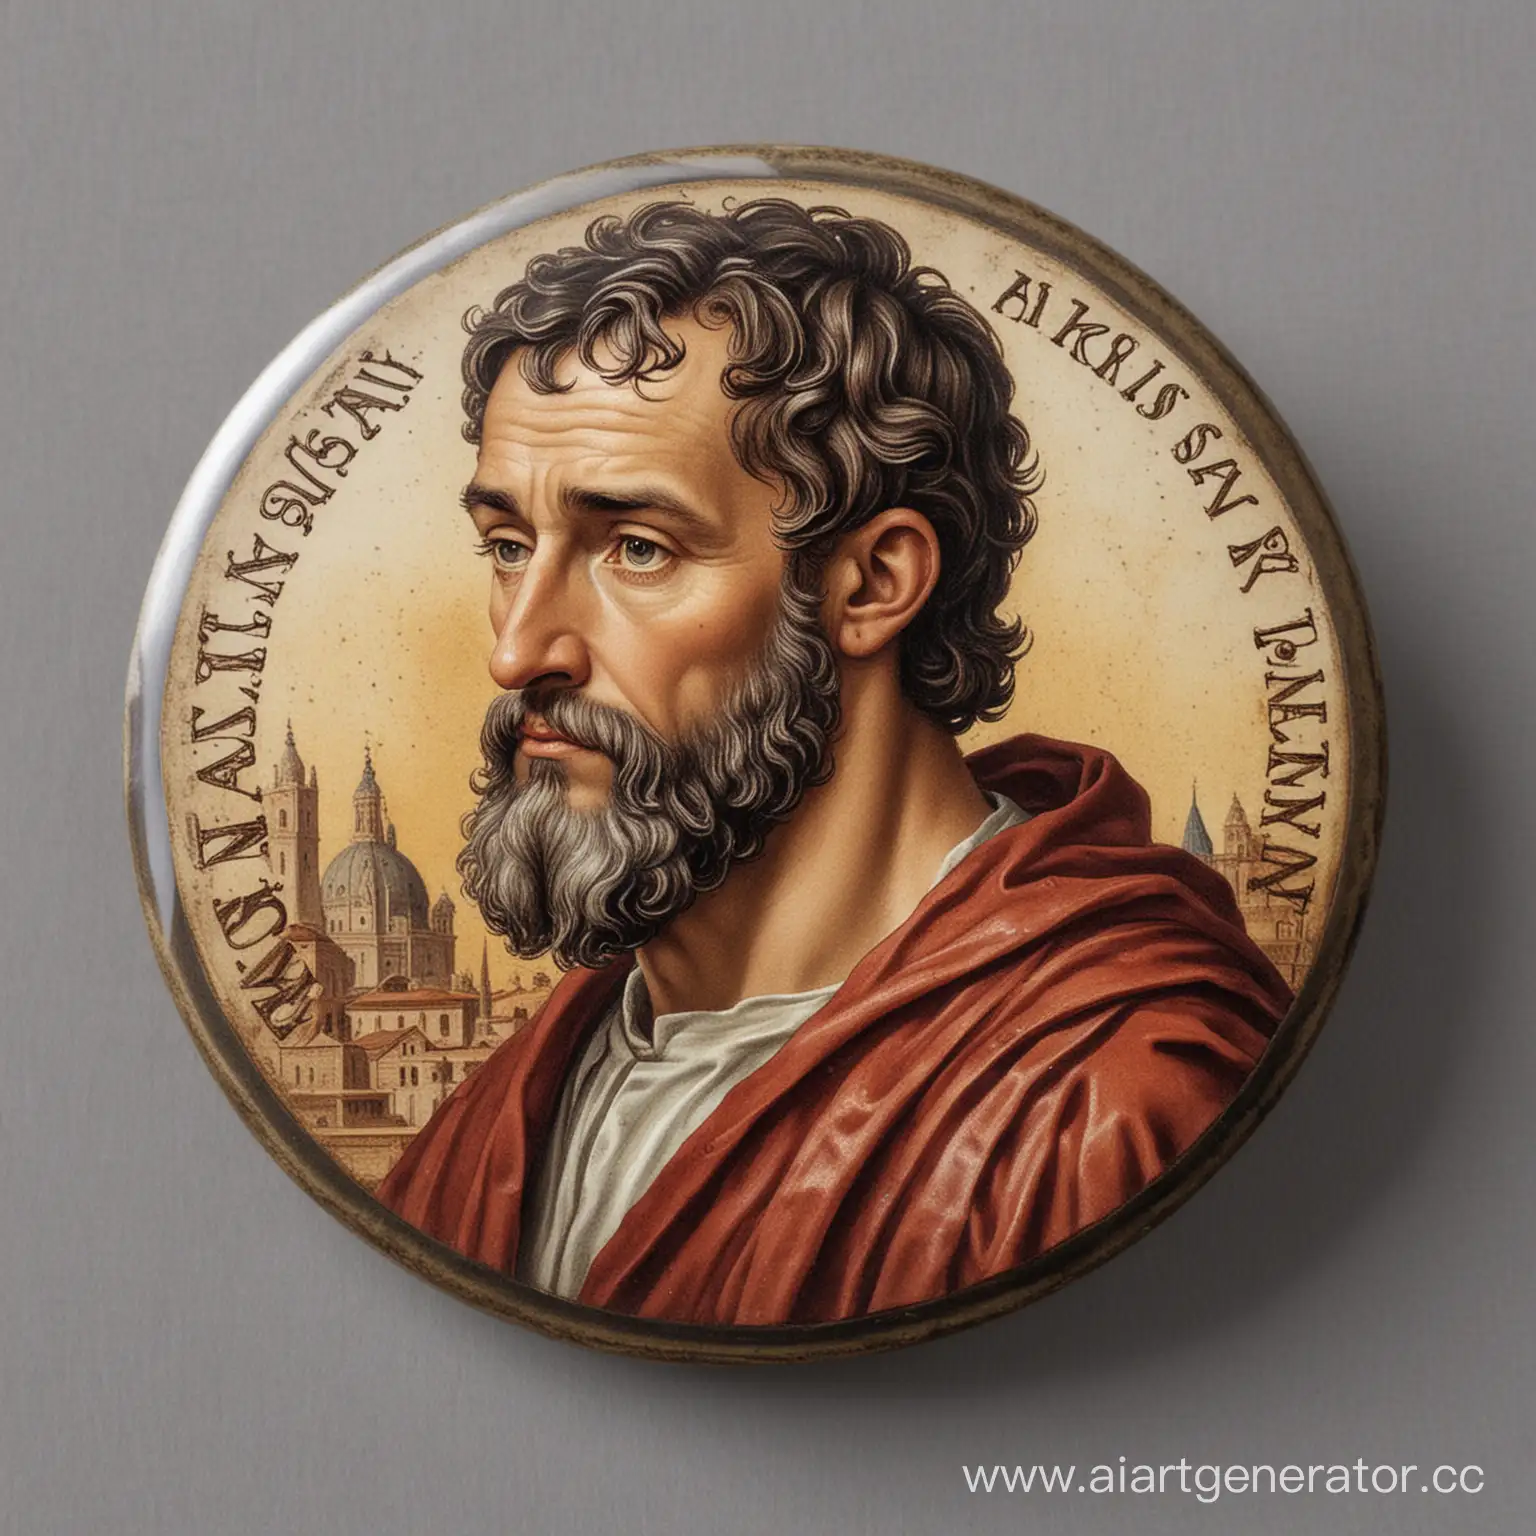 Circular-Badge-Featuring-Roman-Scholar-Galen